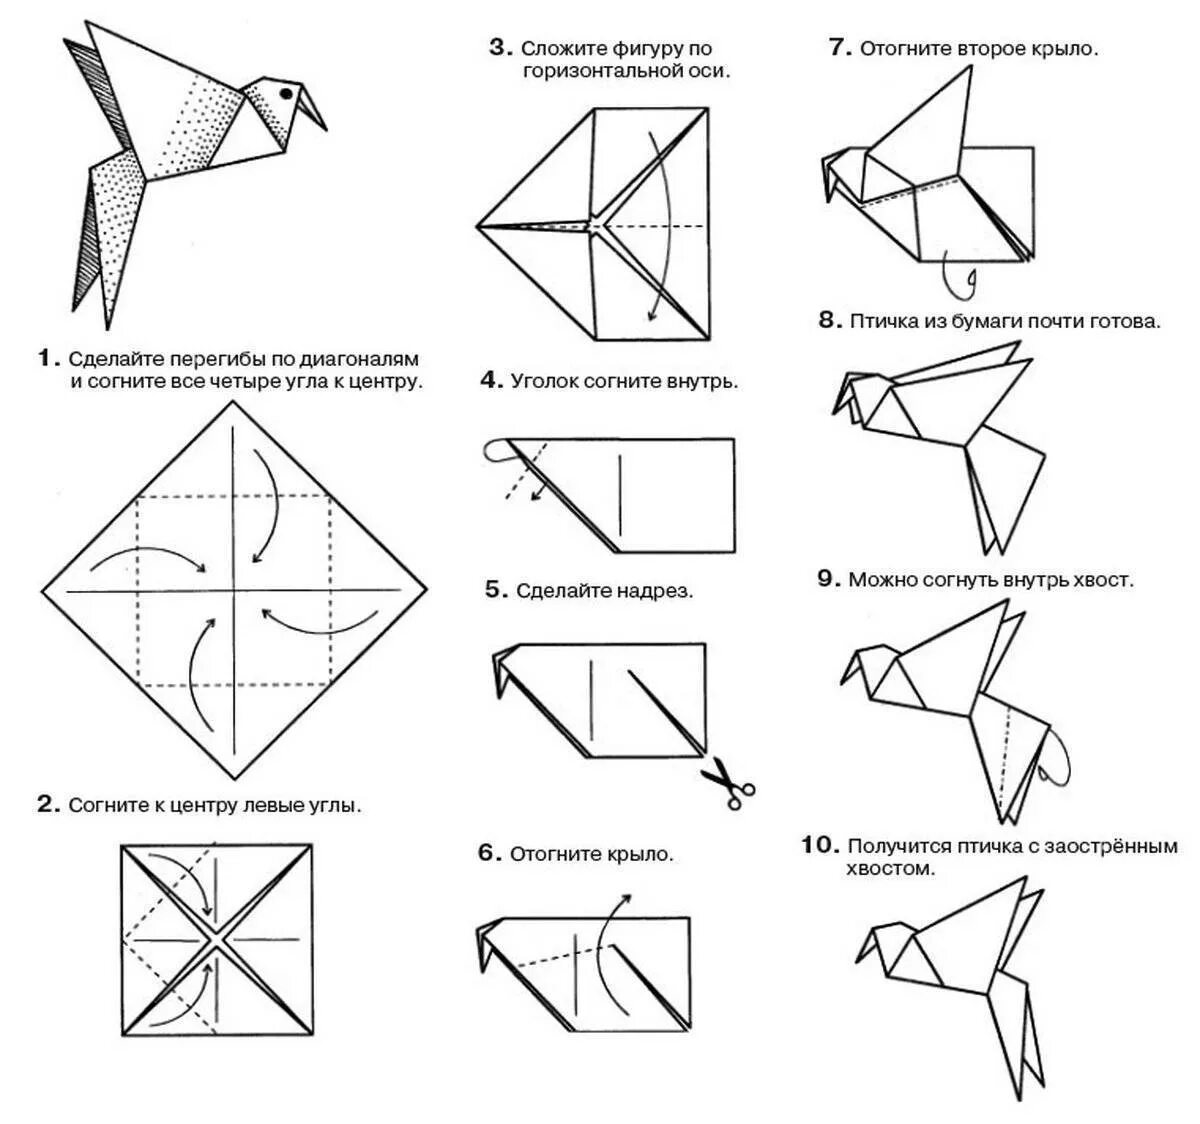 Простой способ оригами. Птичка из бумаги схема складывания пошагово. Птица оригами из бумаги простая схема для детей. Оригами из бумаги пошагово 3 класс. Оригами из бумаги для детей инструкция пошагово.